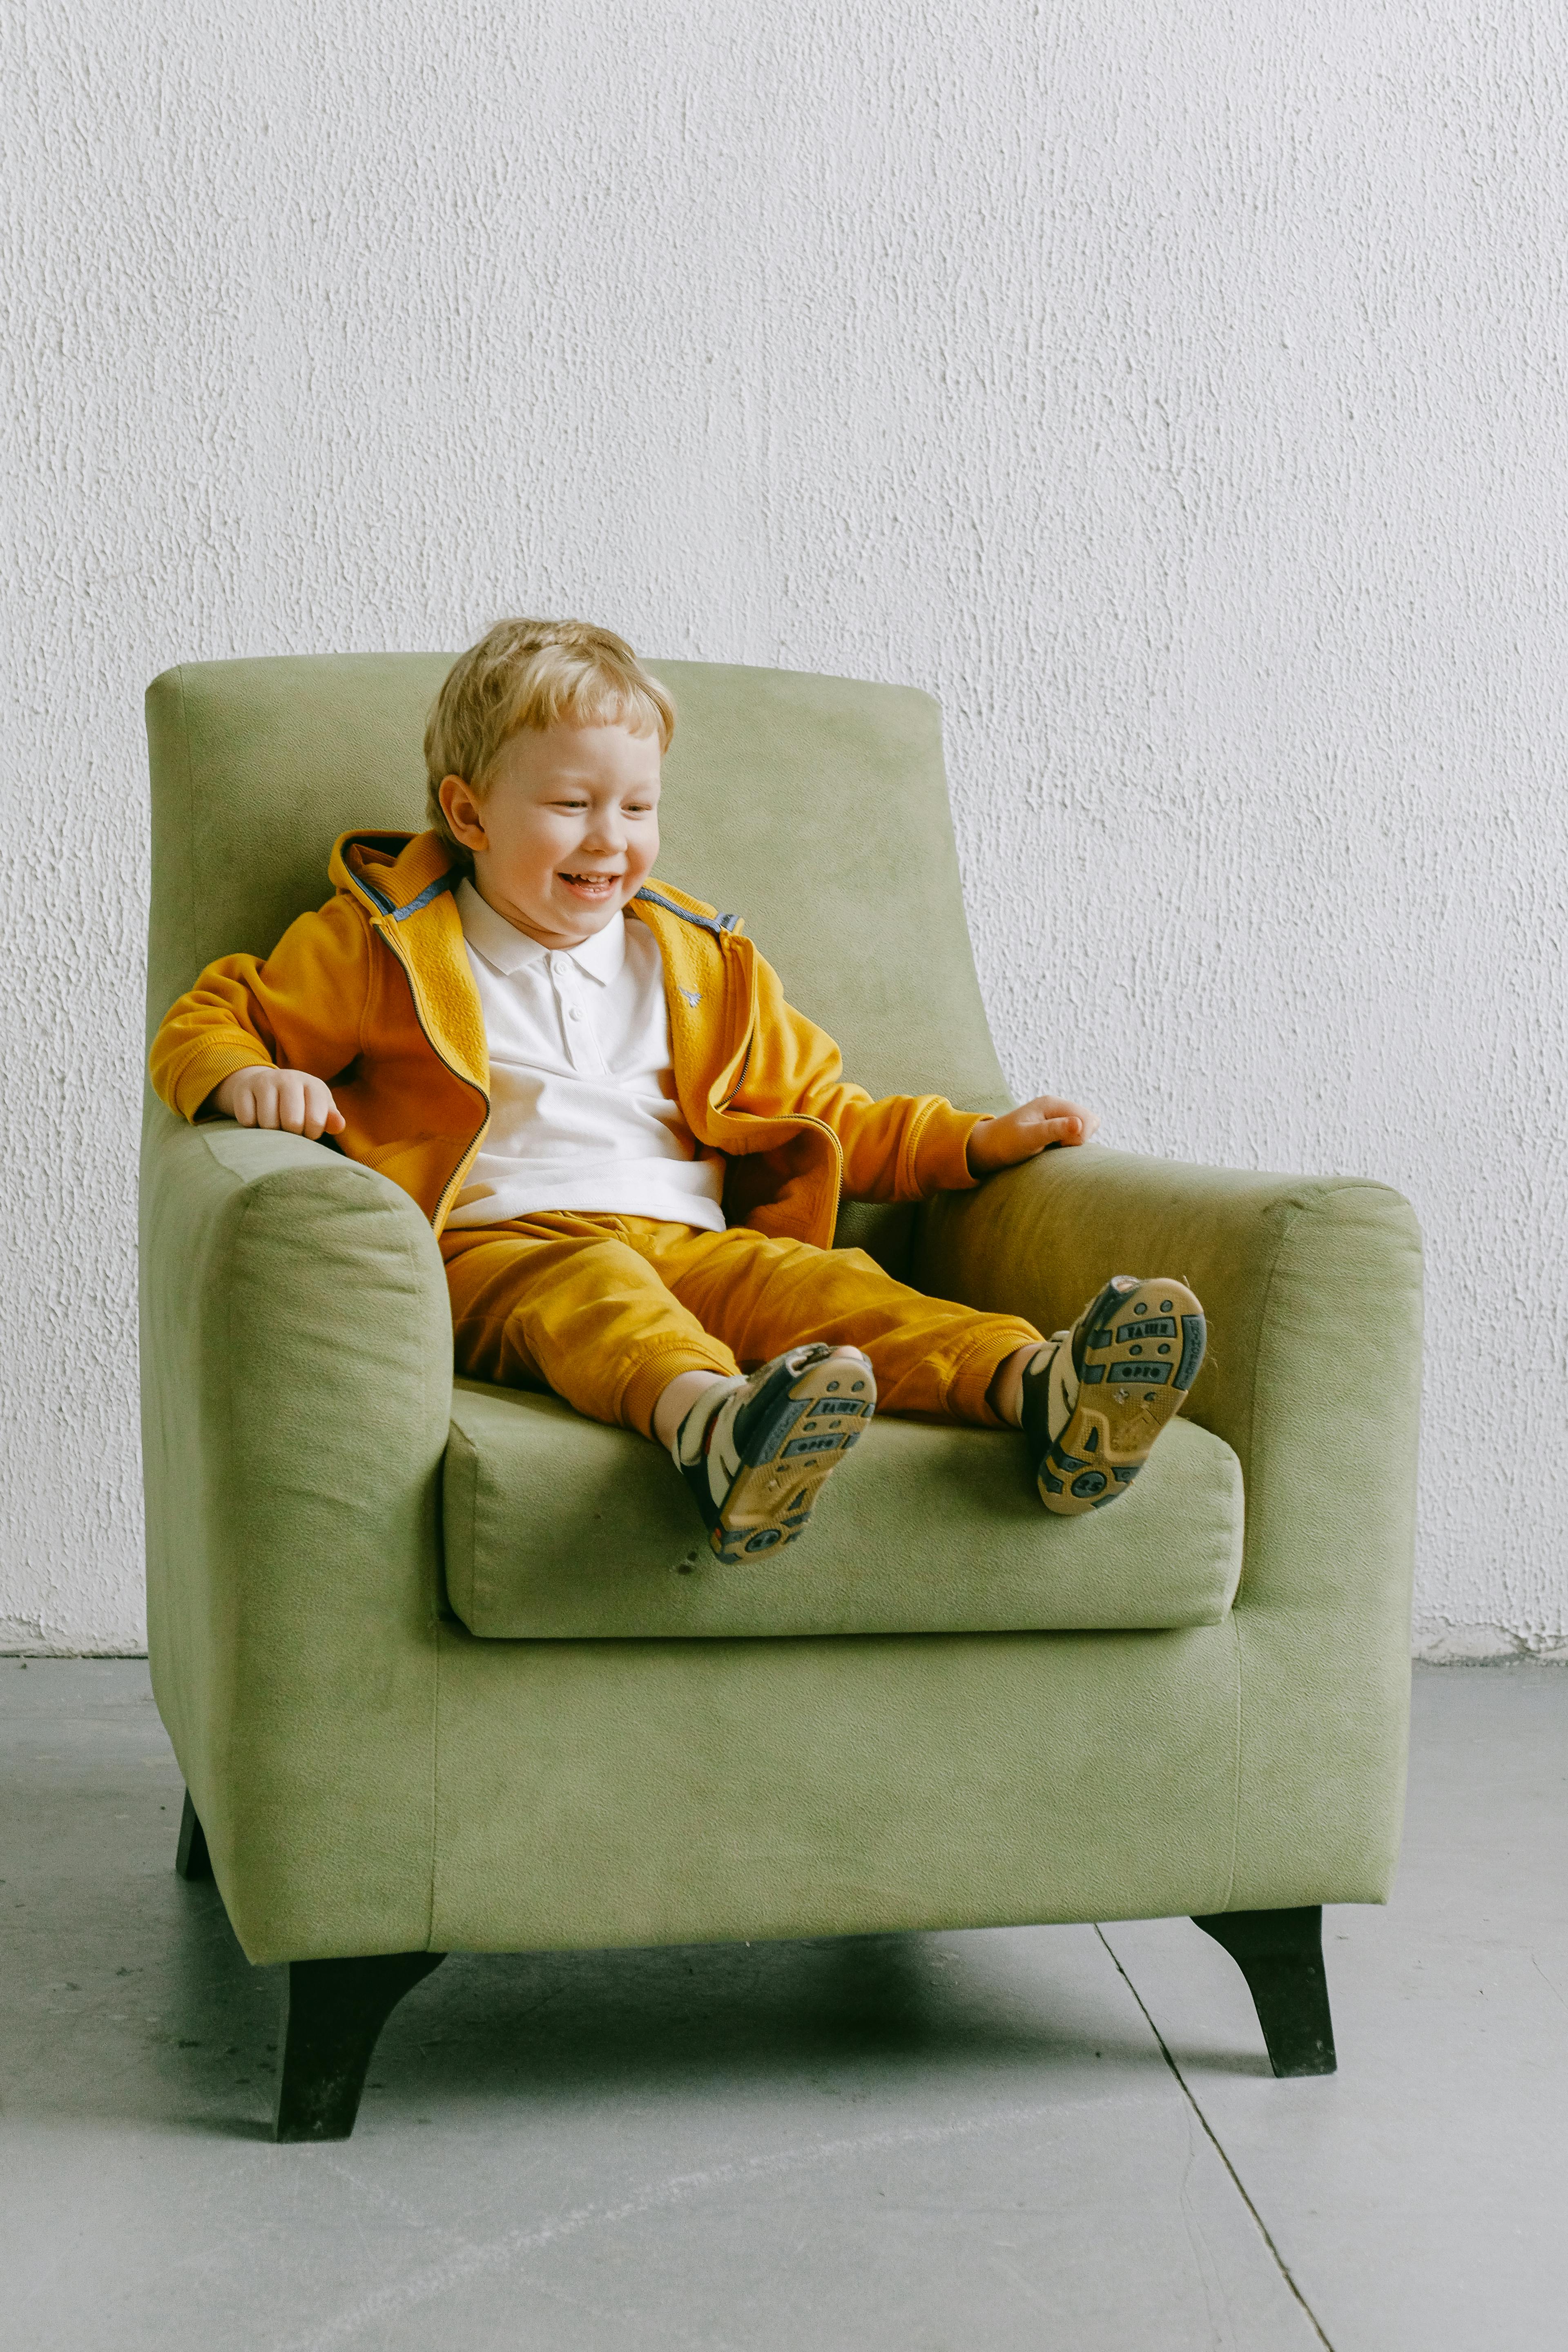 Bebé sentado en un sillón imagen de archivo. Imagen de feliz - 175431877